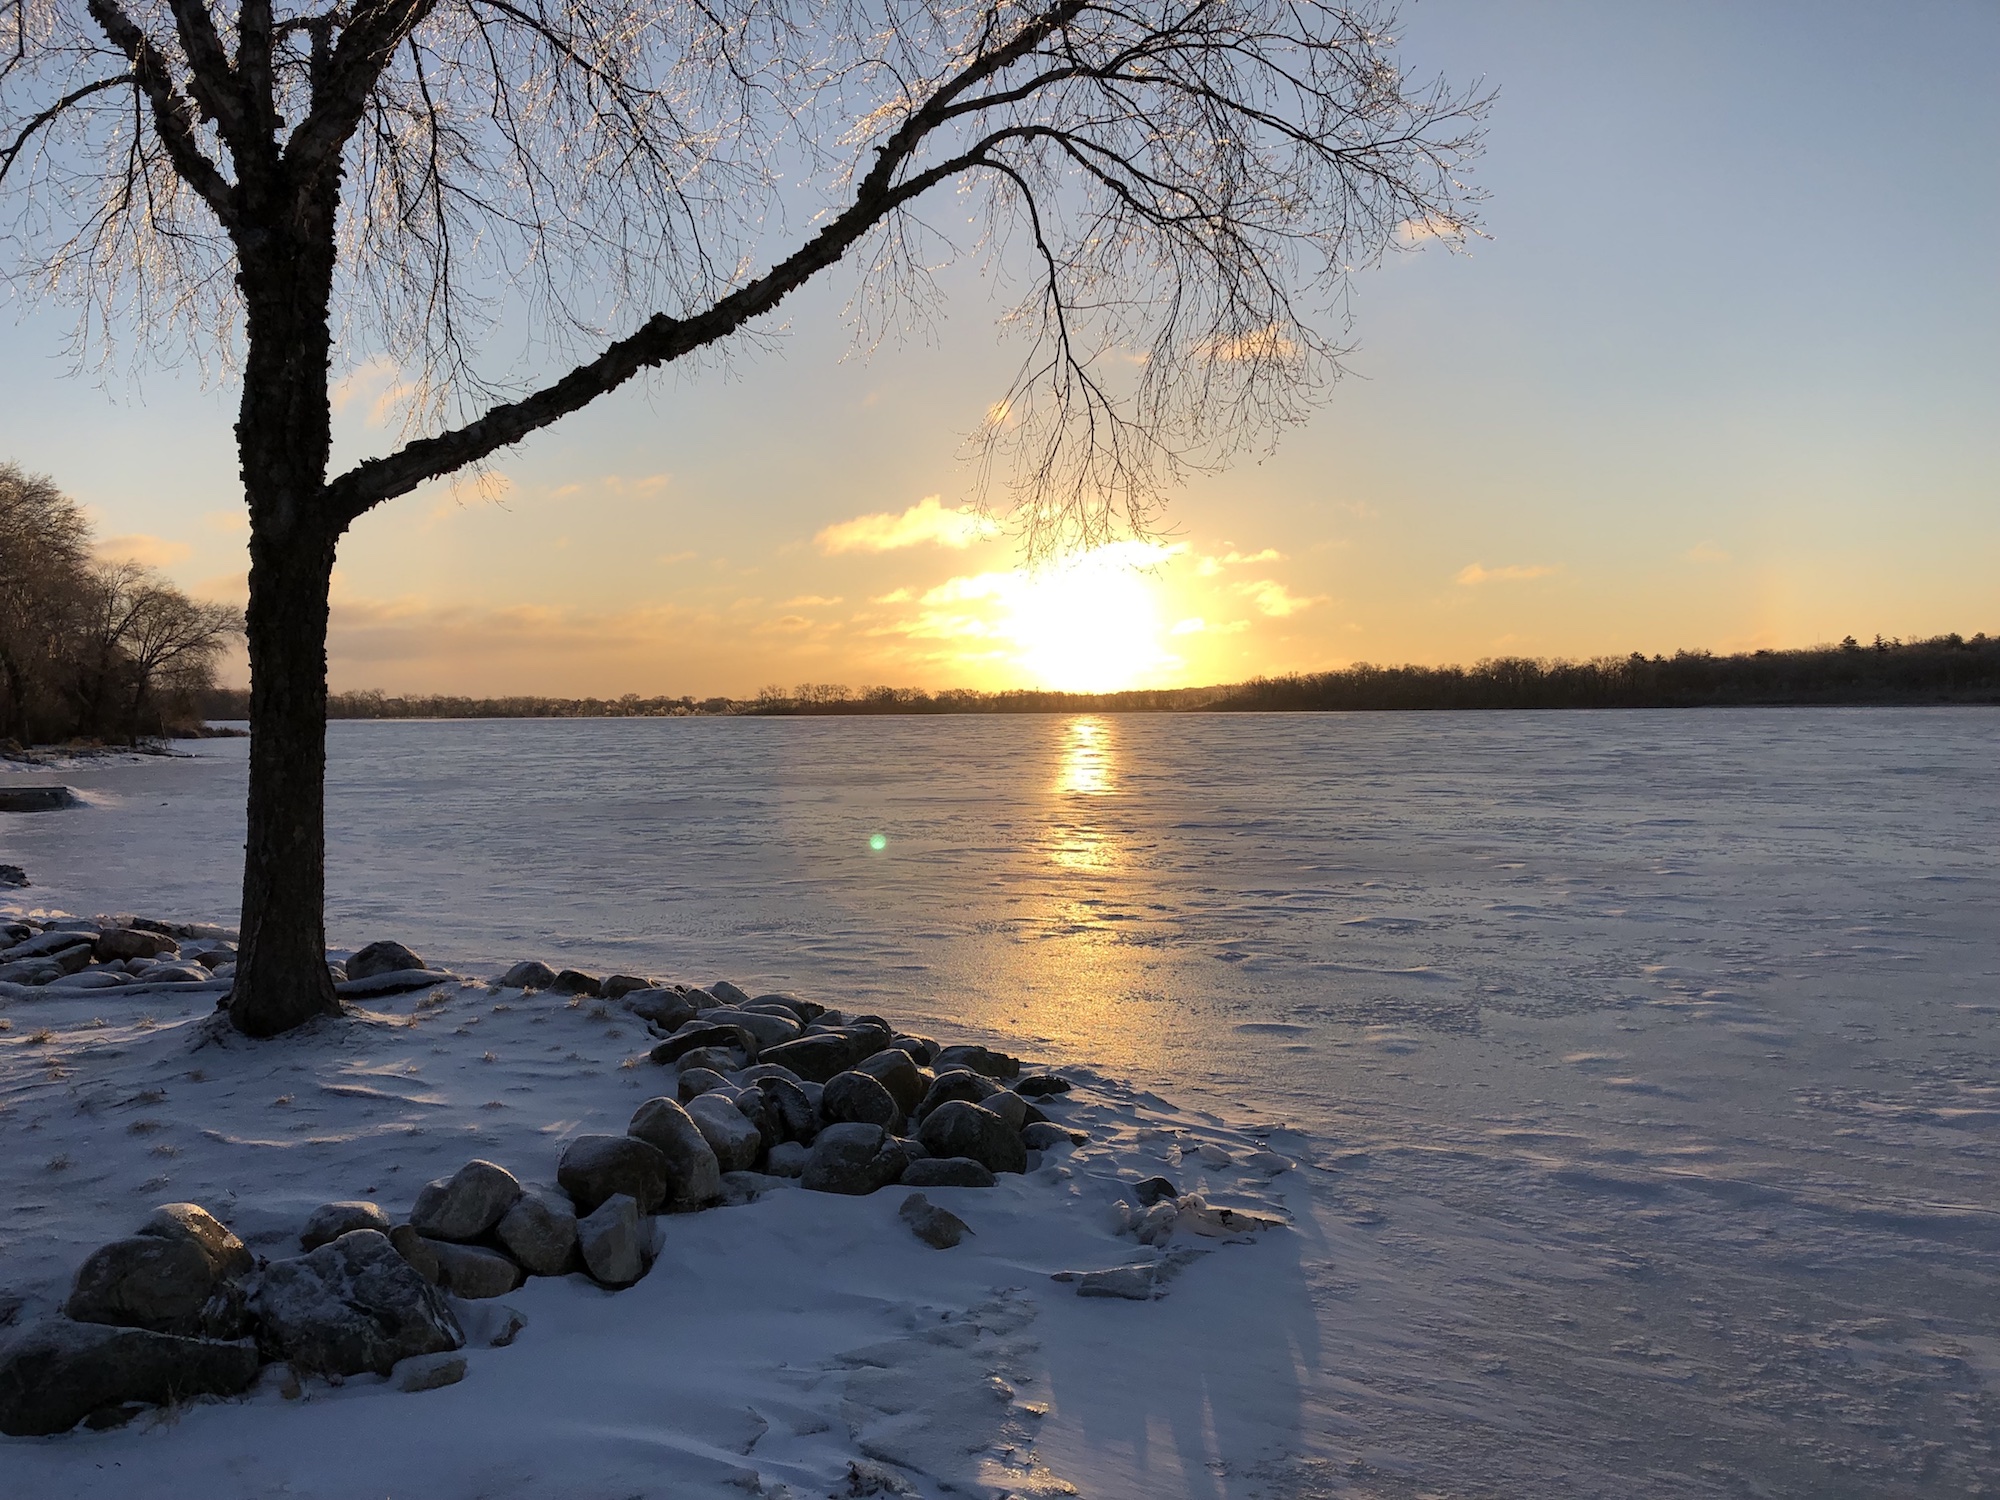 Lake Wingra on February 8, 2019.